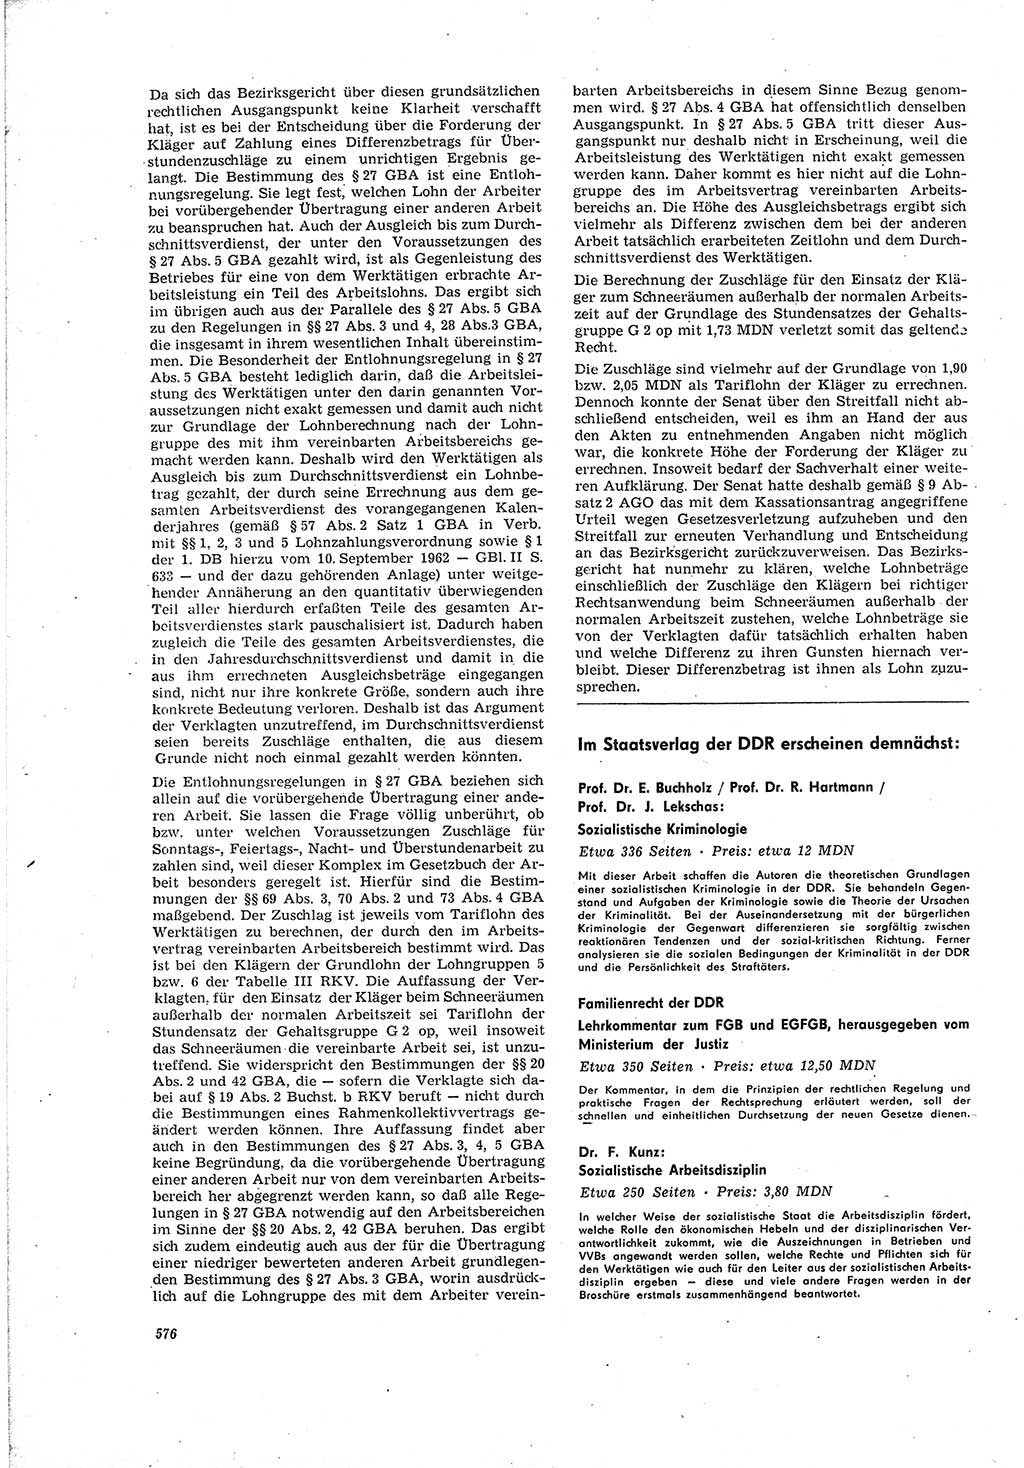 Neue Justiz (NJ), Zeitschrift für Recht und Rechtswissenschaft [Deutsche Demokratische Republik (DDR)], 20. Jahrgang 1966, Seite 576 (NJ DDR 1966, S. 576)